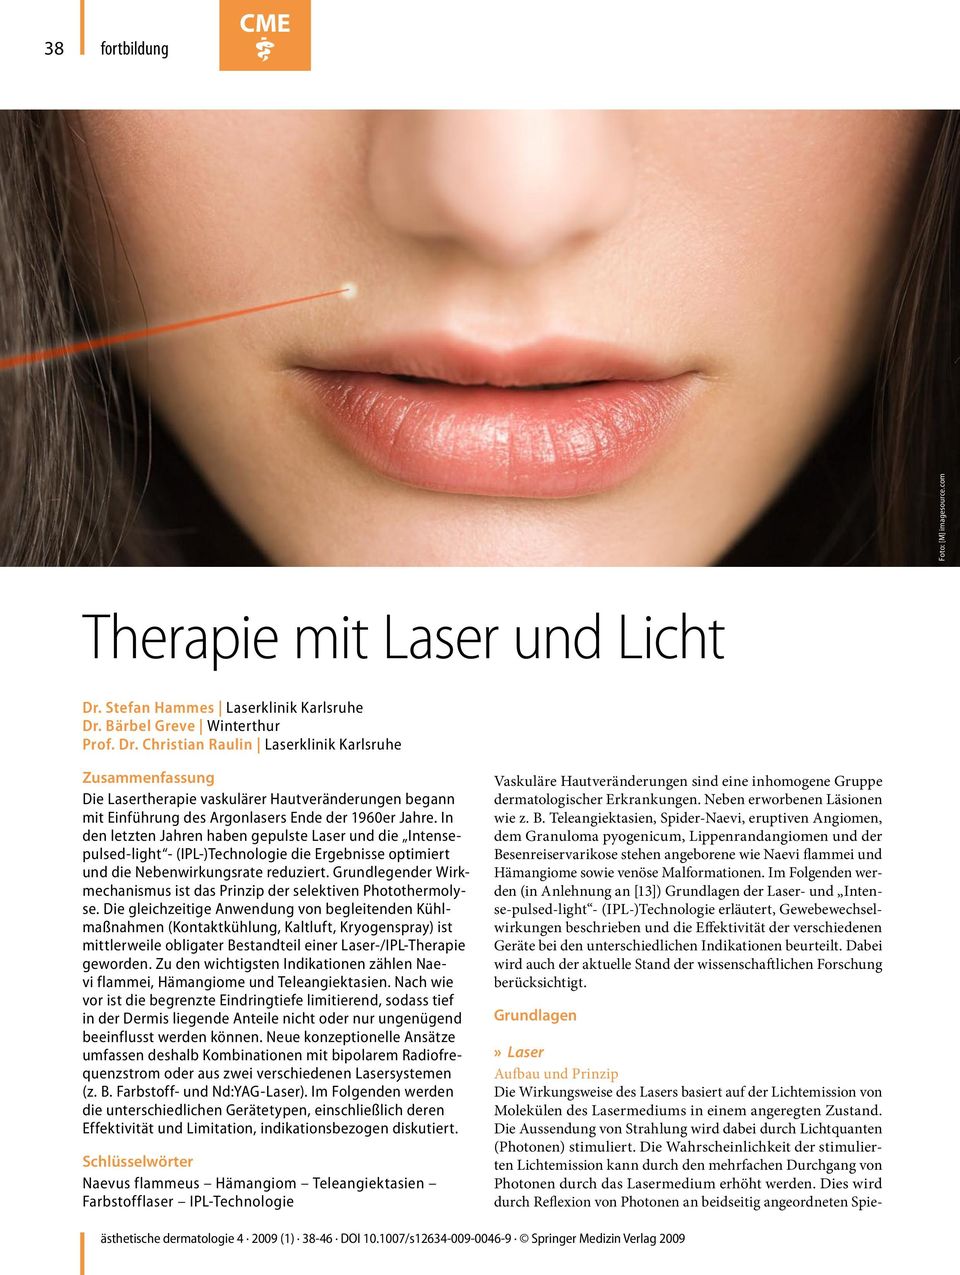 Bärbel Greve Winterthur Prof. Dr. Christian Raulin Laserklinik Karlsruhe Zusammenfassung Die Lasertherapie vaskulärer Hautveränderungen begann mit Einführung des Argonlasers Ende der 1960er Jahre.